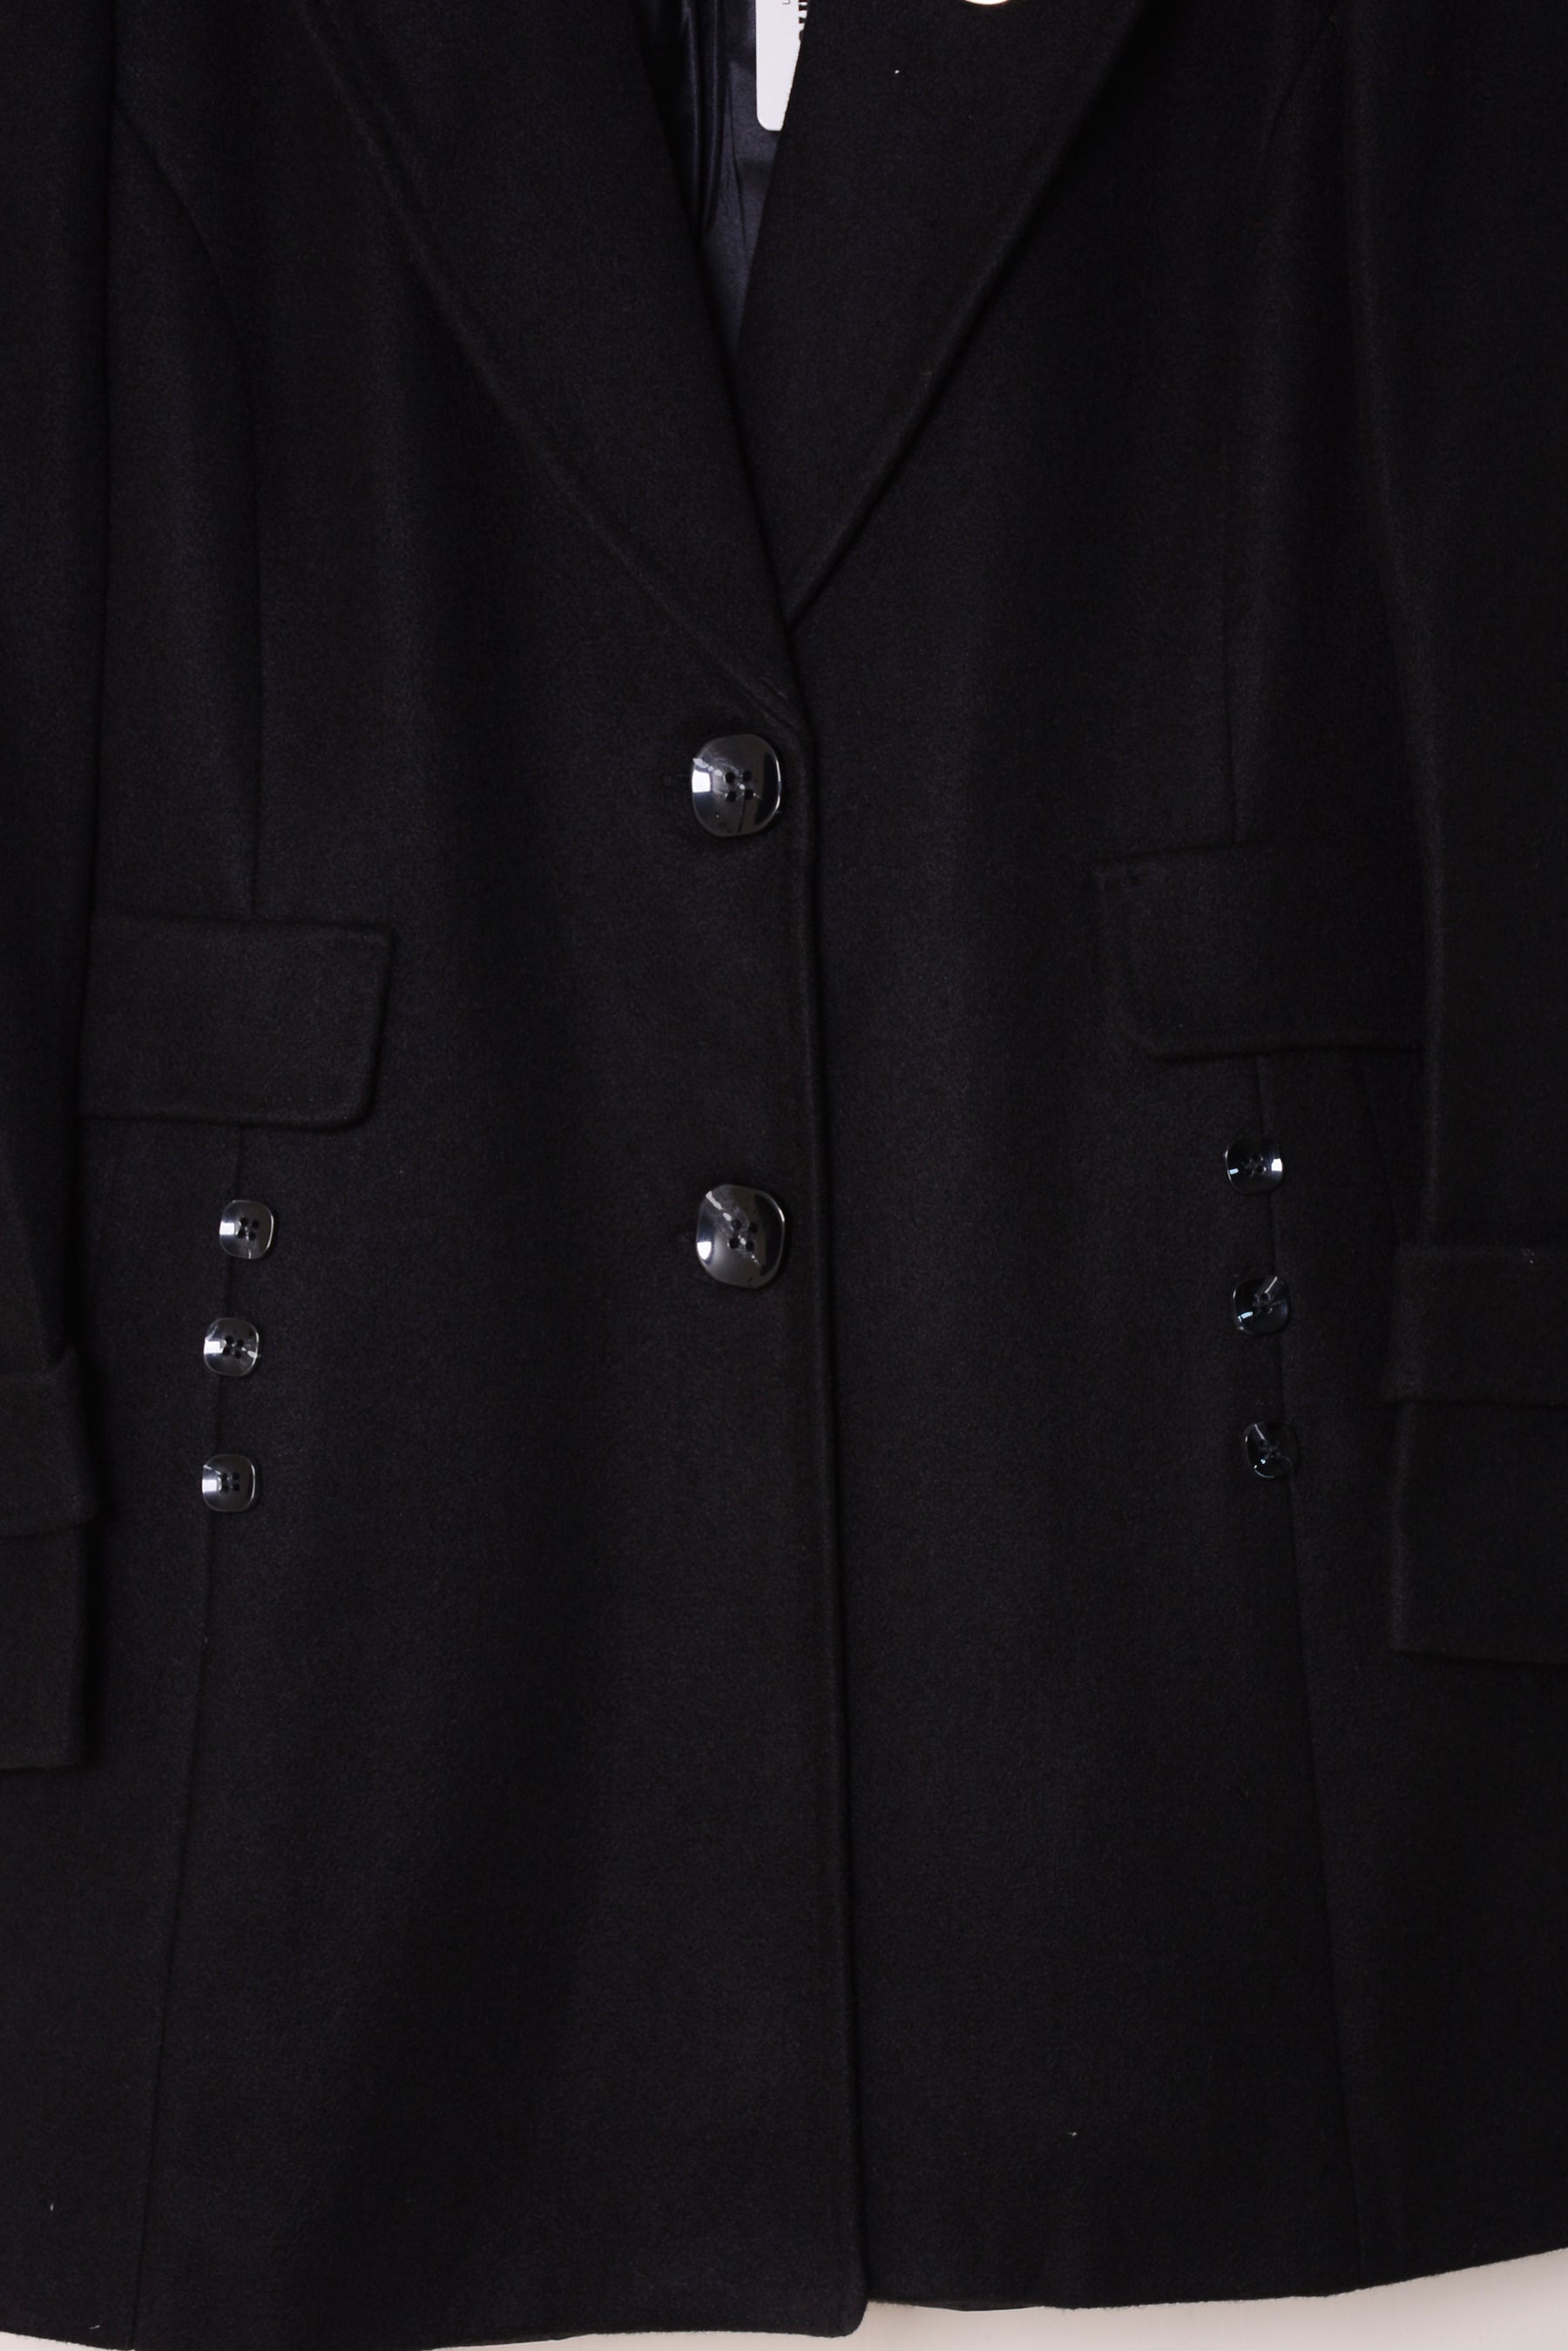 Ladies Winter Long Coats YKN-463 Black